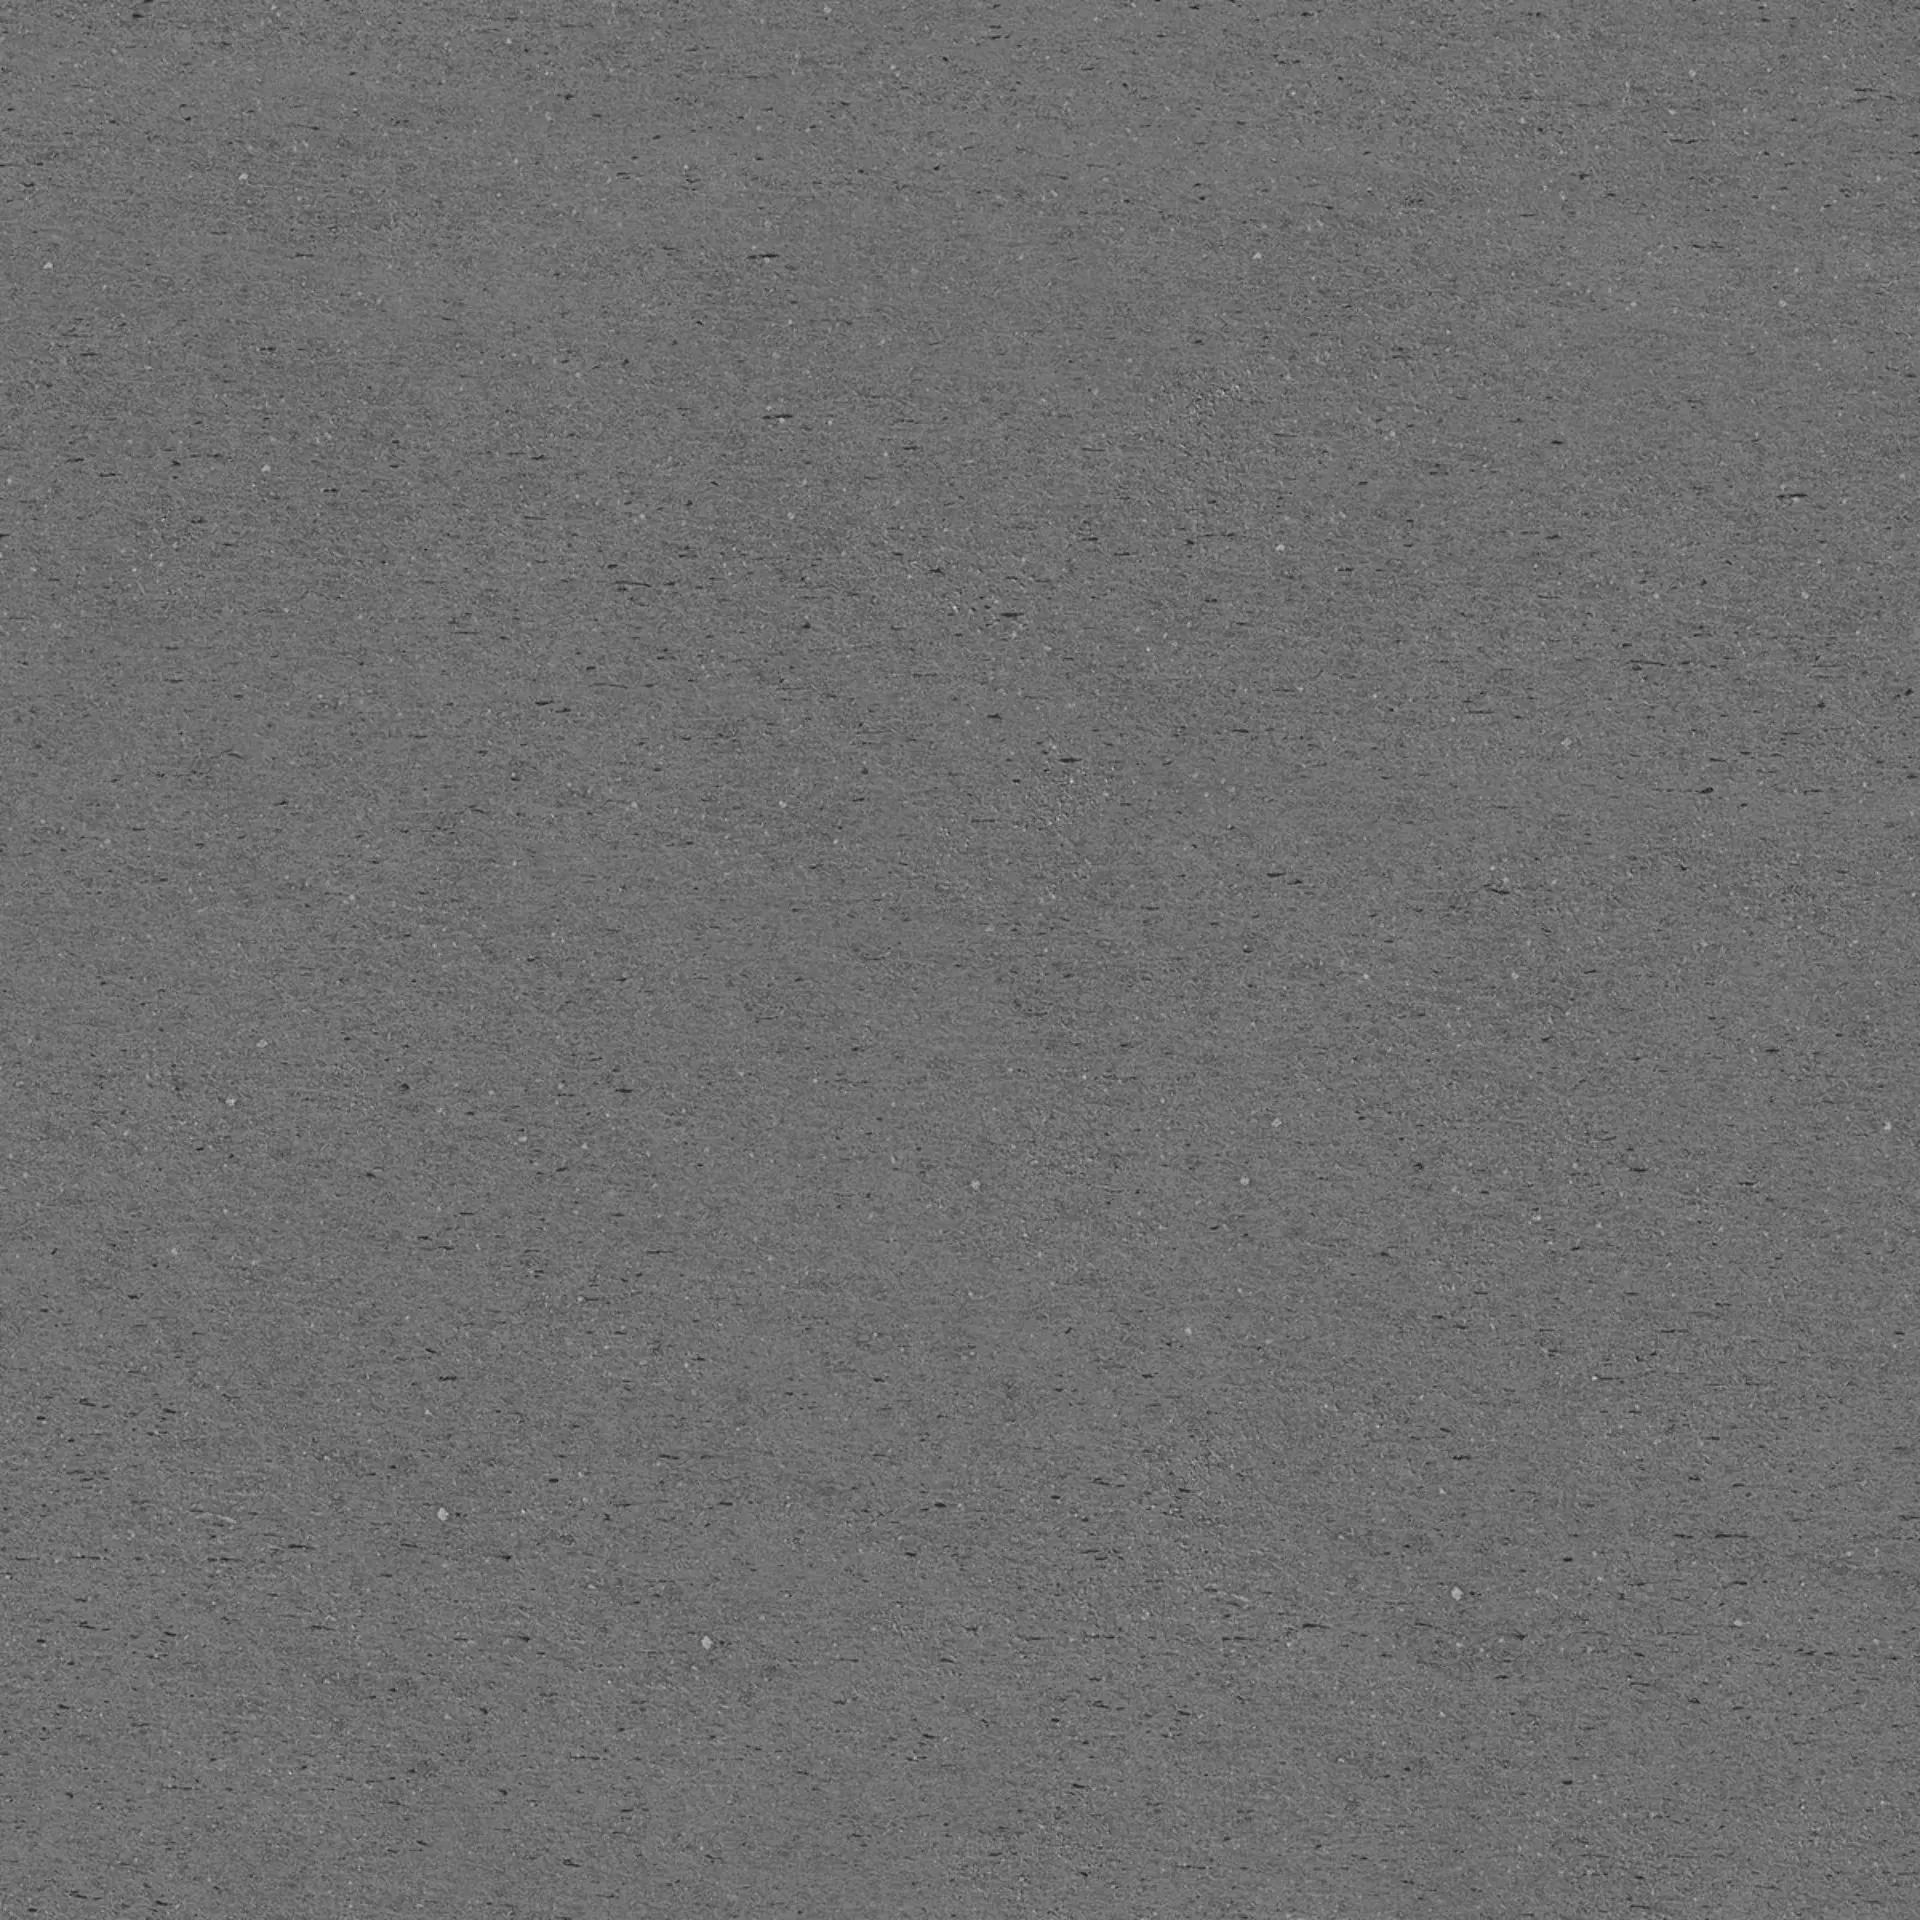 Bodenfliese,Wandfliese Marazzi Mystone Basalto Piombo Naturale – Matt Piombo M26U matt natur 60x60cm rektifiziert 10mm